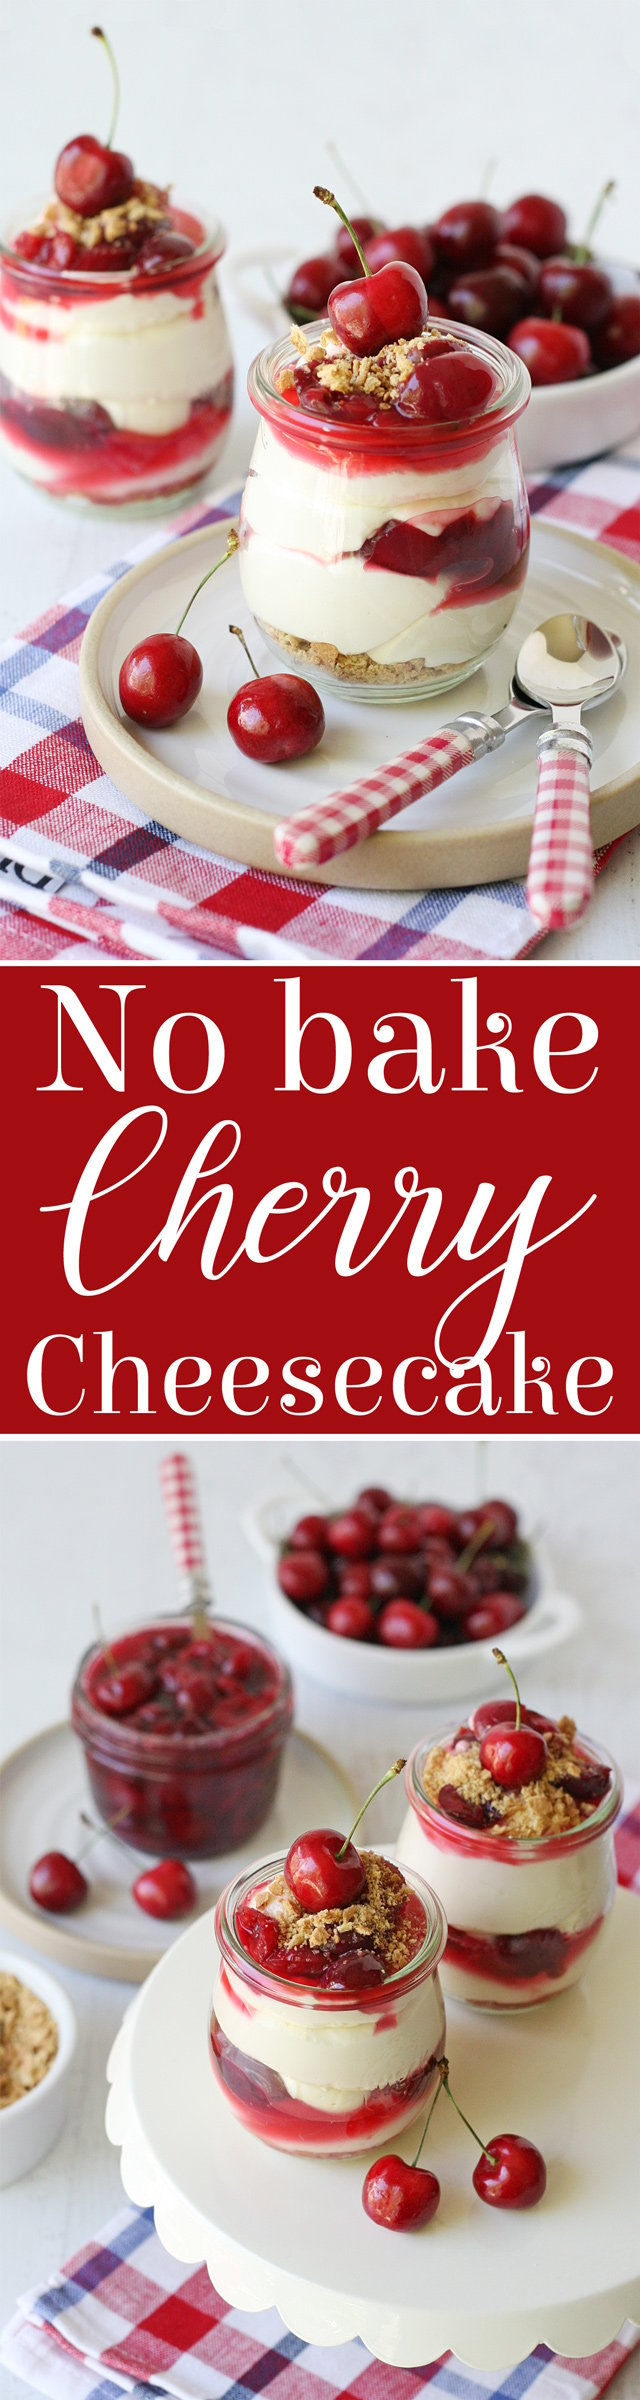 No Bake Cherry Cheesecake Recipe